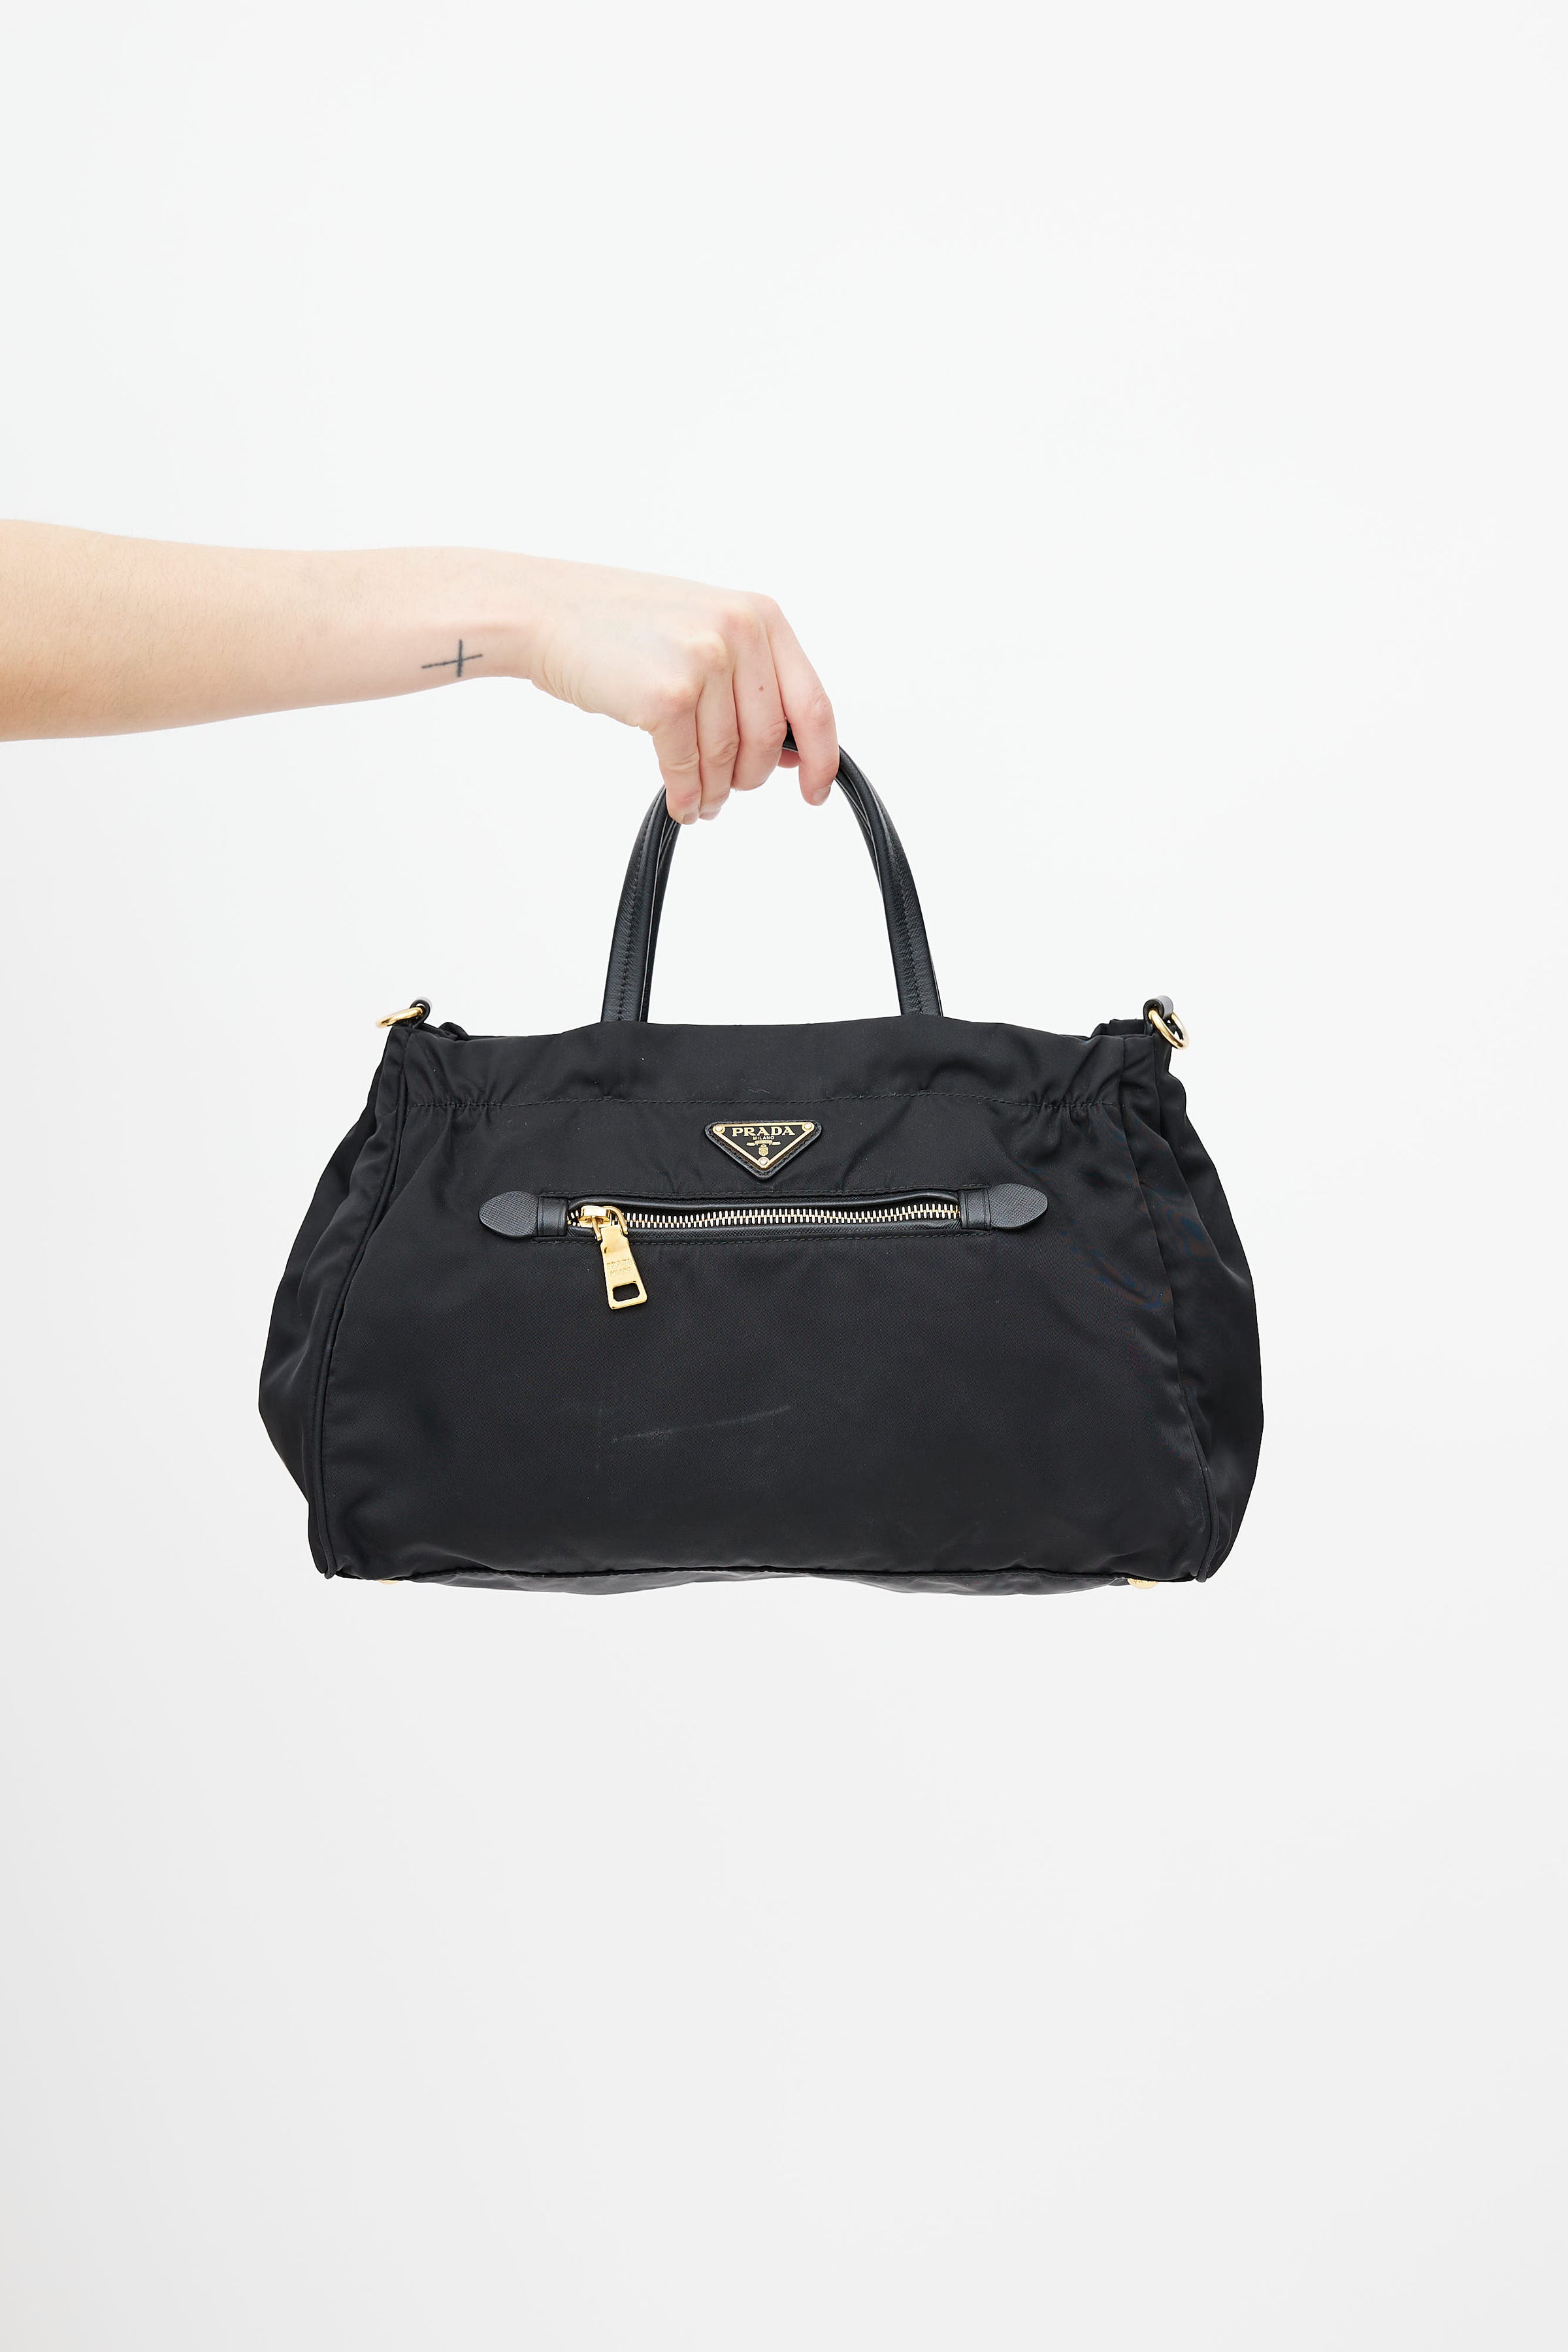 PRADA Saffiano Tessuto Nylon Chain Shoulder Bag Black 861241